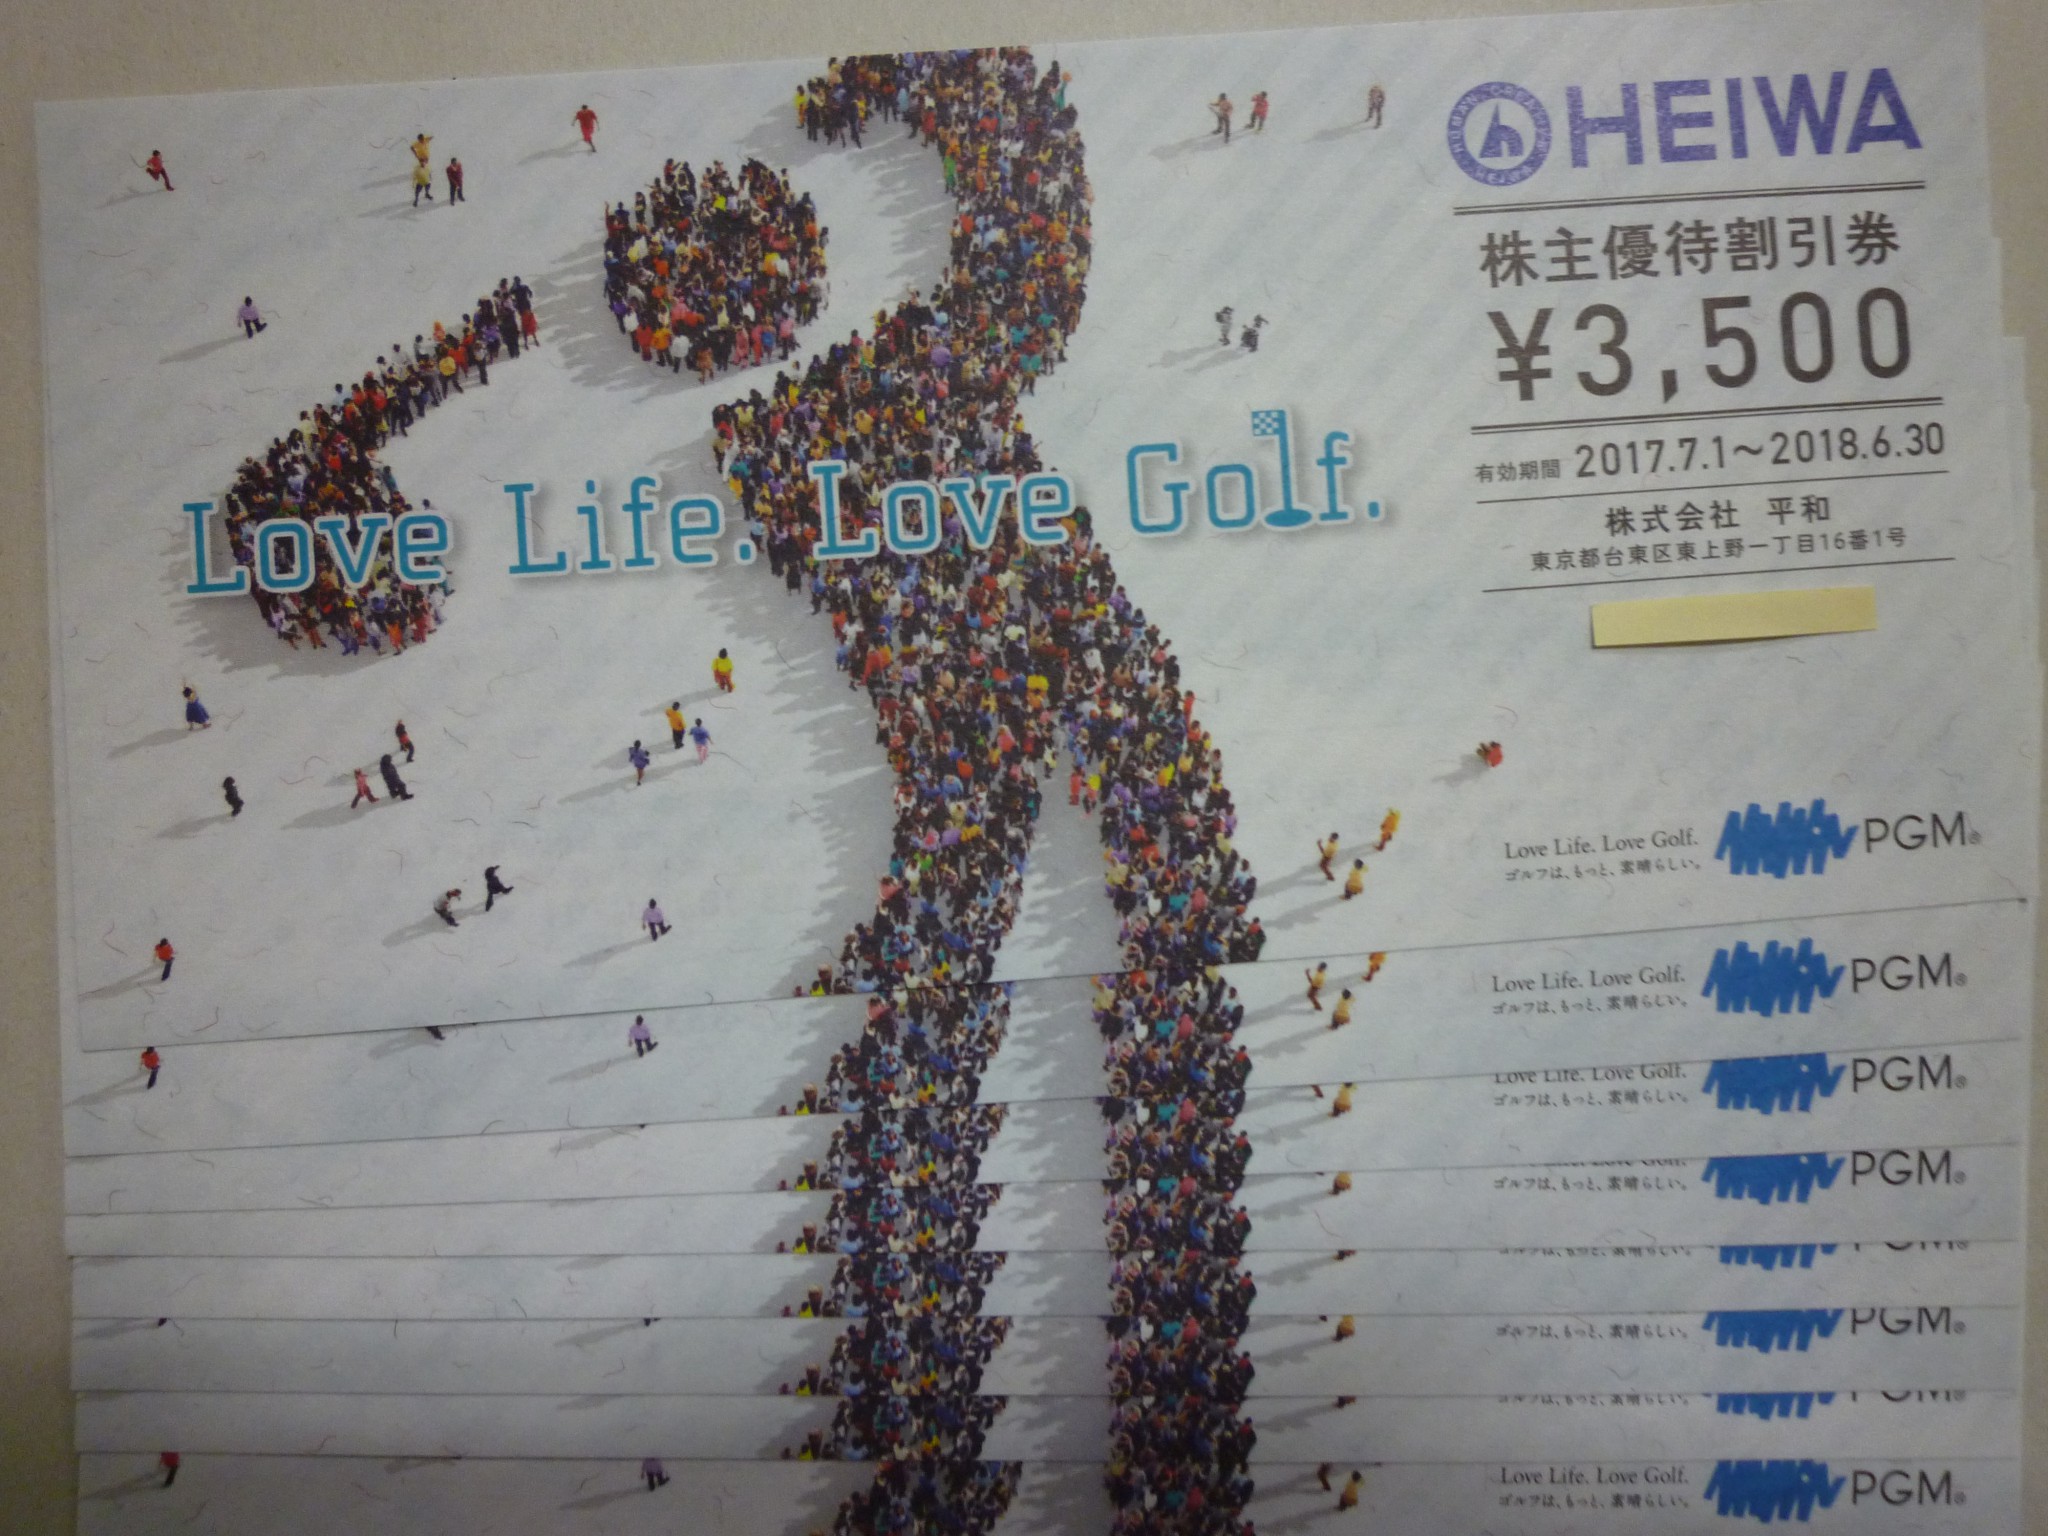 HEIWA 株主優待割引券 | 金券・切手・コインの買取と販売 | 札幌の金券ショップ | チェリースタンプ